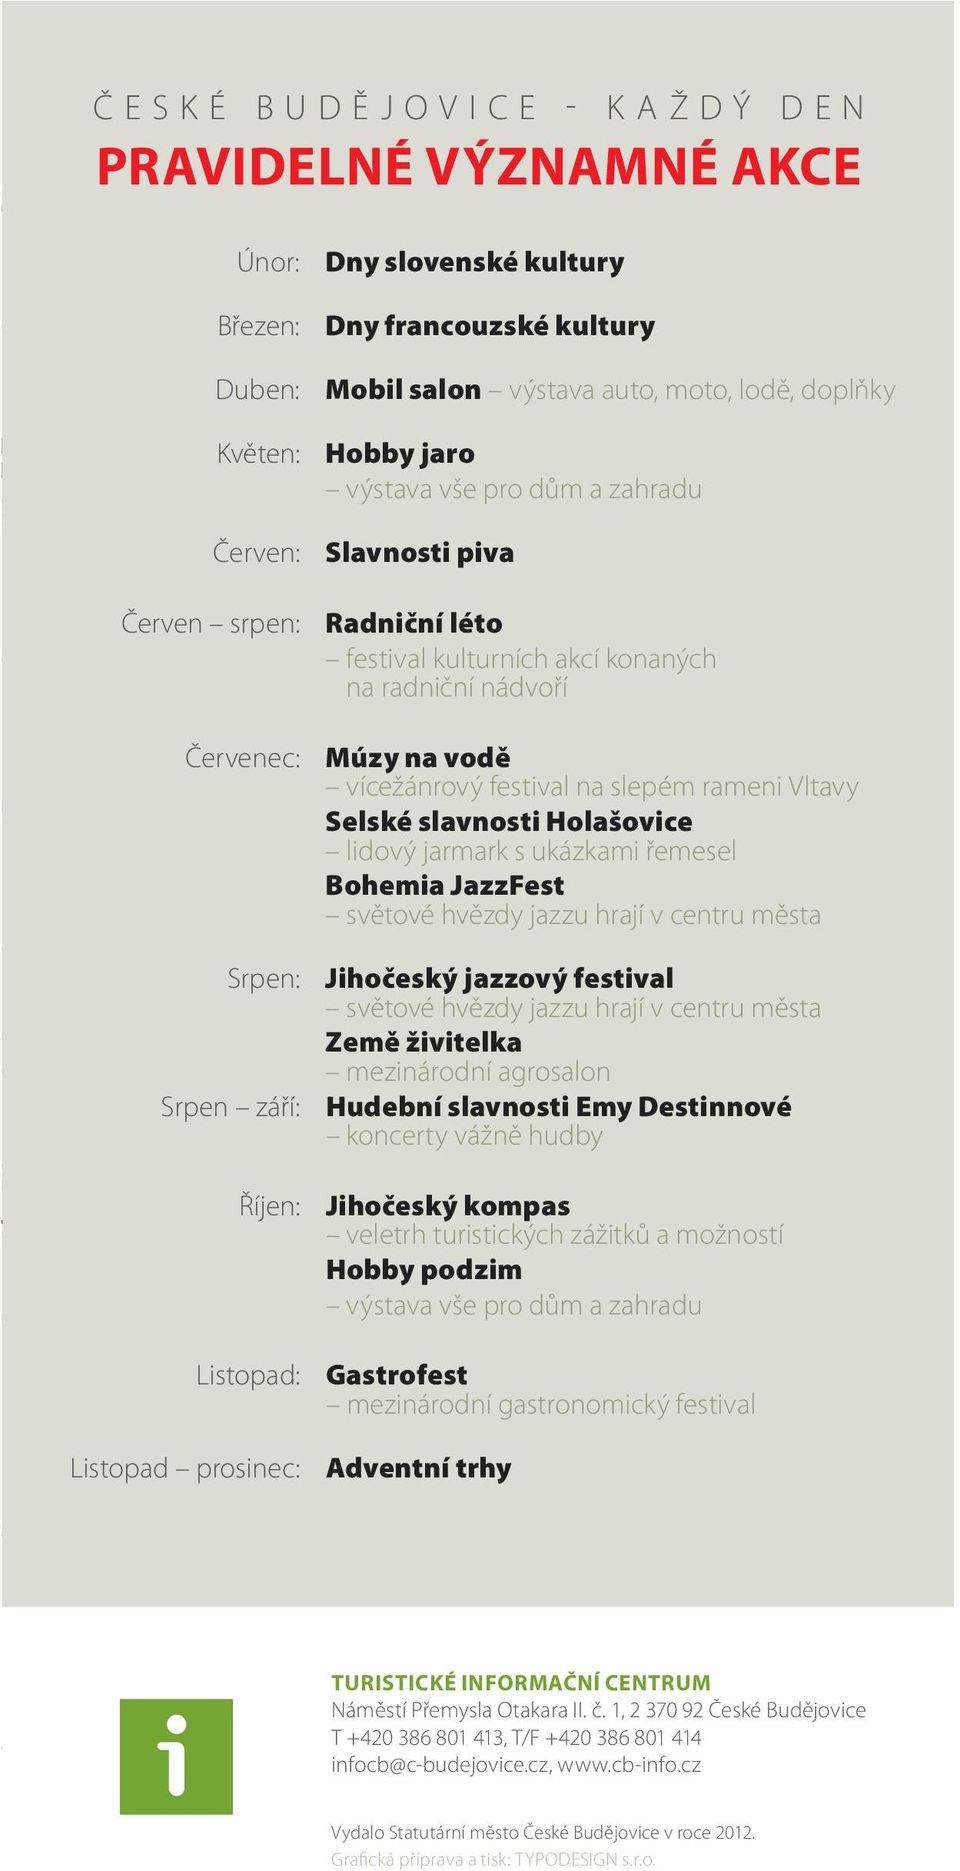 vodě vícežánrový festival na slepém rameni Vltavy Selské slavnosti Holašovice lidový jarmark s ukázkami řemesel Bohemia JazzFest světové hvězdy jazzu hrají v centru města Jihočeský jazzový festival